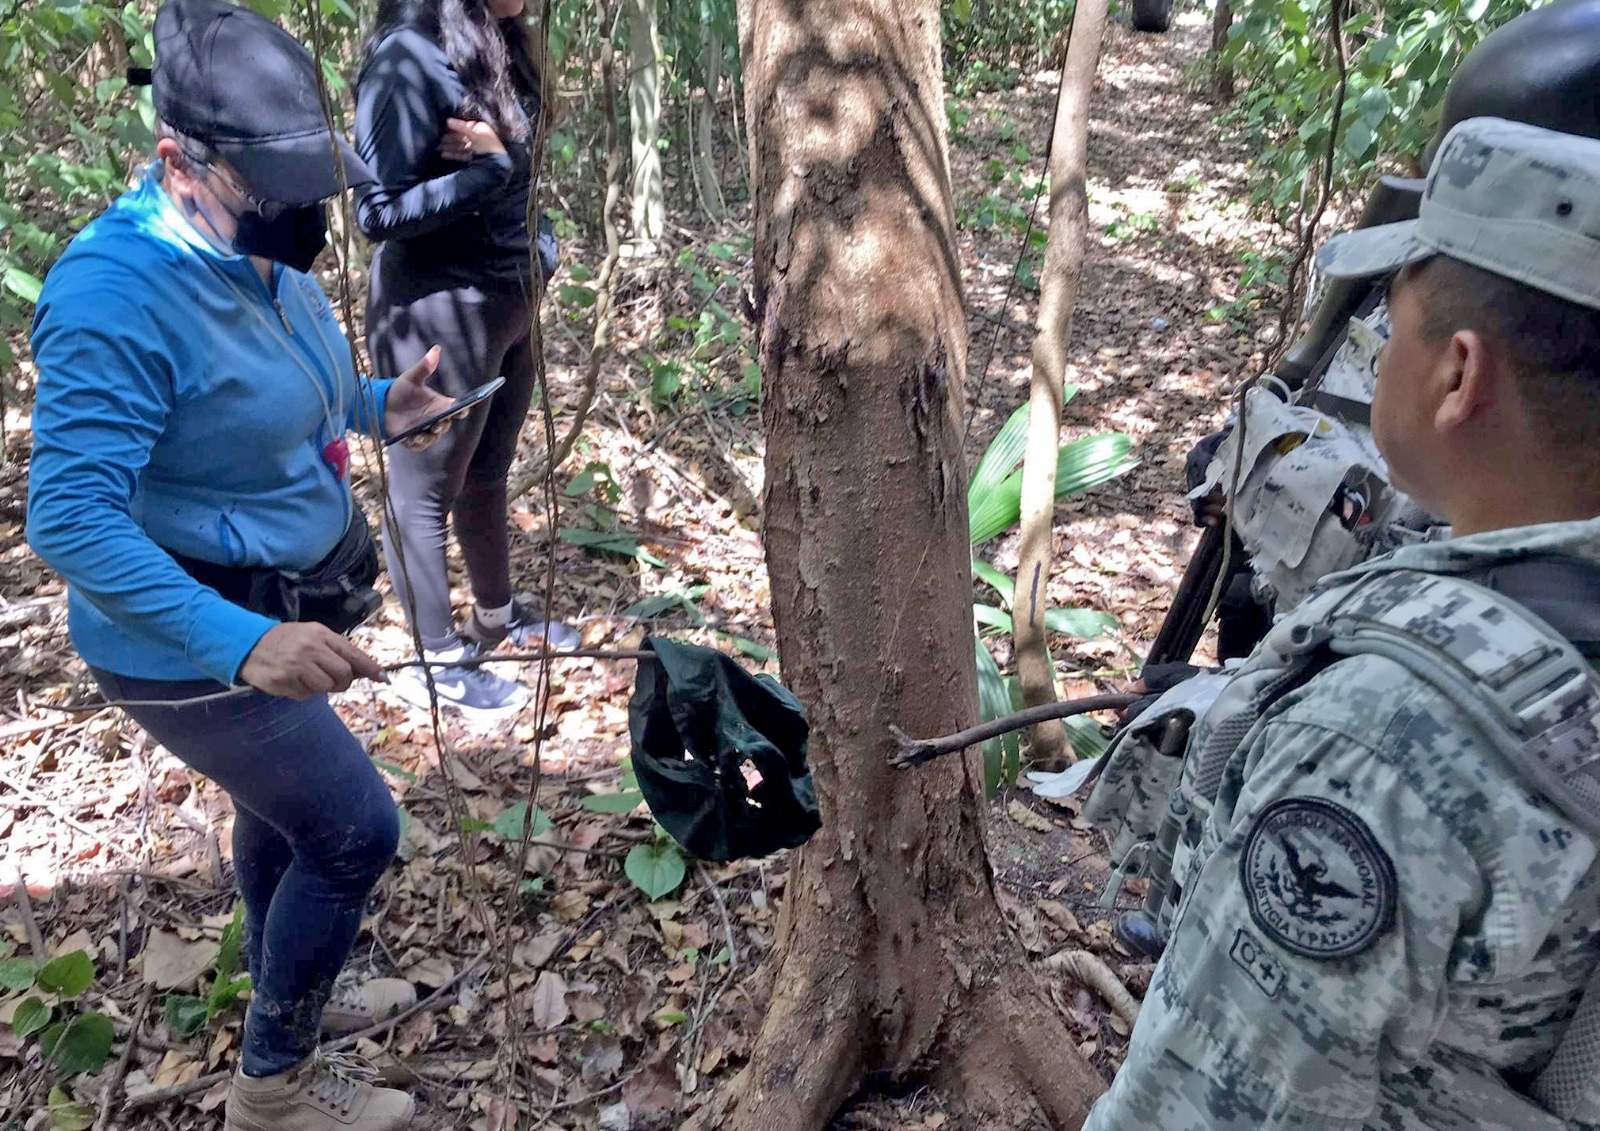 El colectivo de búsqueda de personas en Quintana Roo 'Memoria, Verdad y Justicia', solicitó el apoyo de la Guardia Nacional para la vigilancia en la zona de las labores de localización